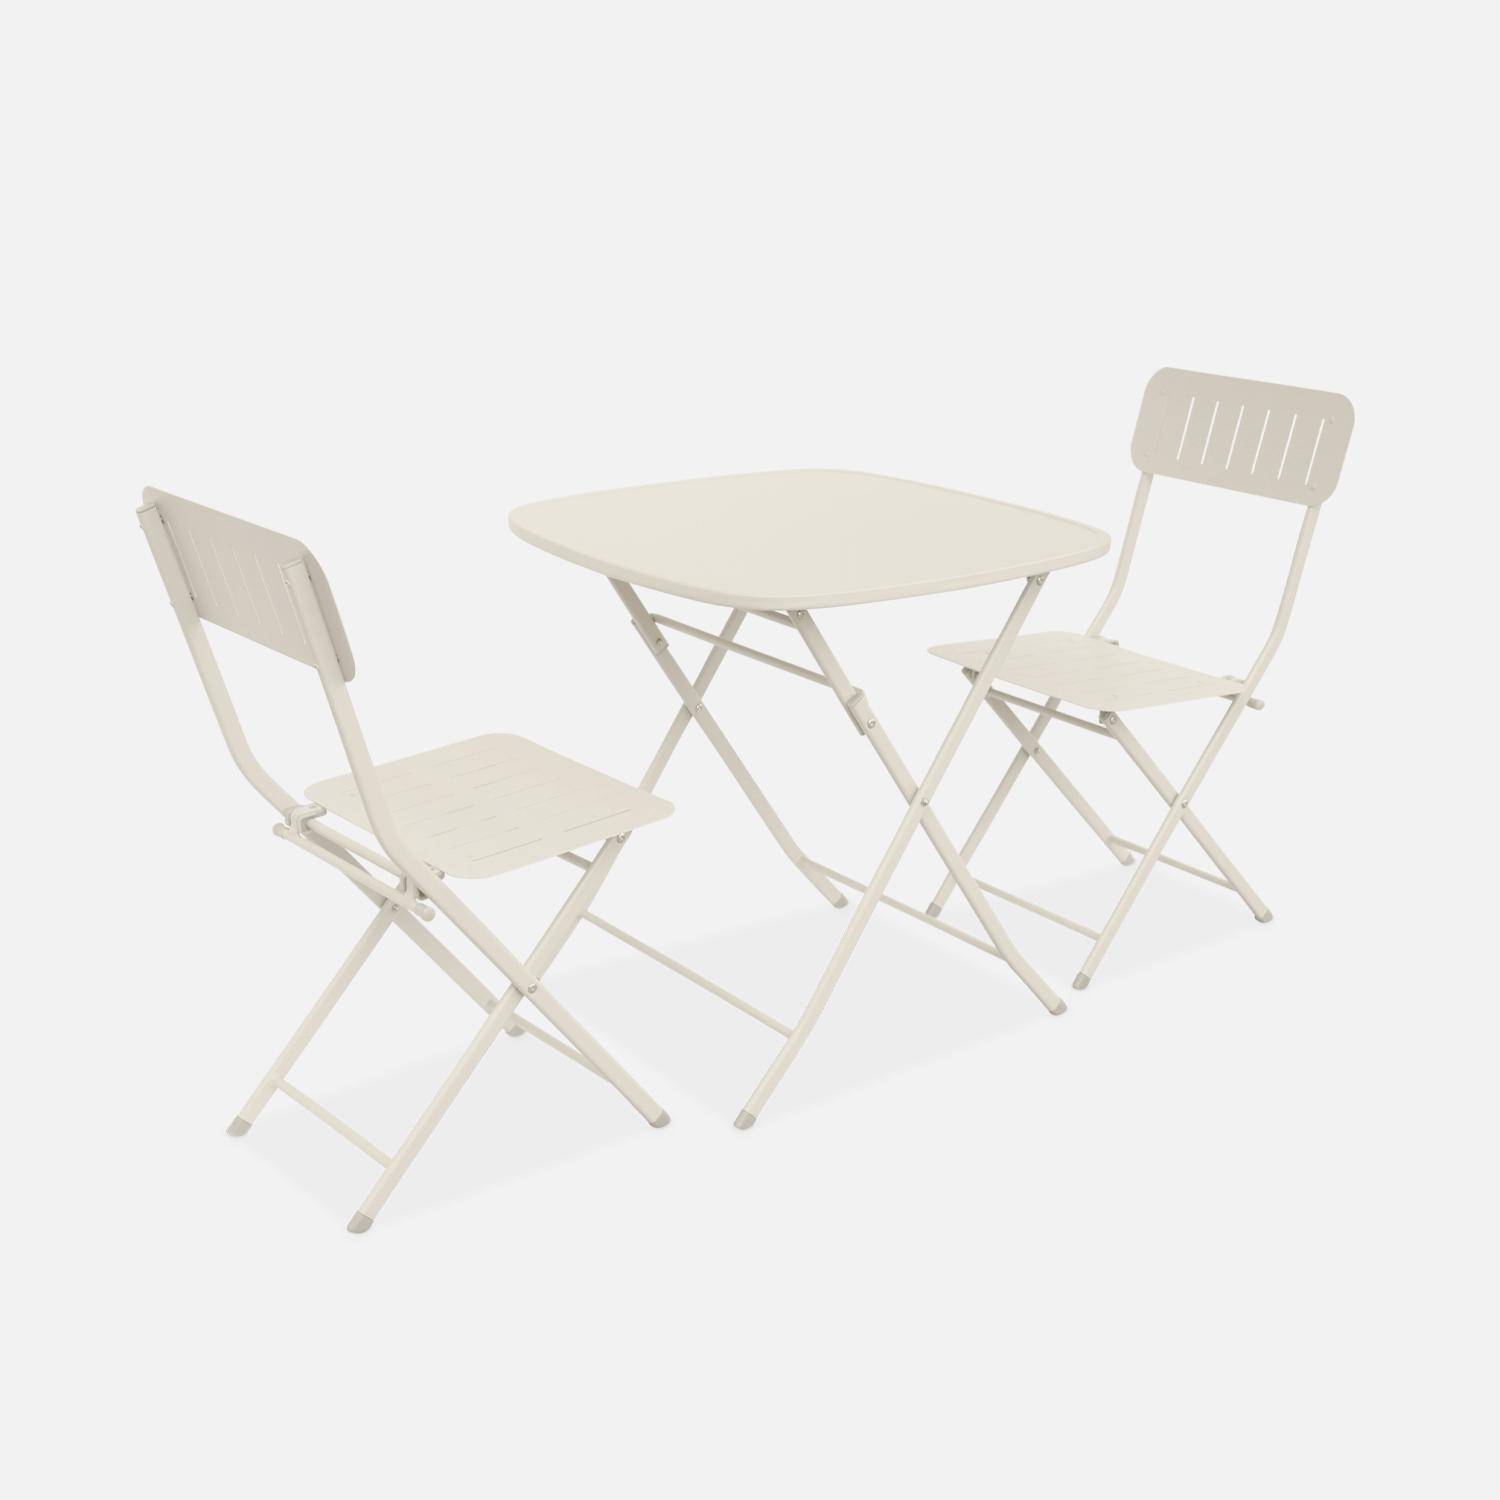 Table de jardin type bistrot pliable blanc cassé avec 2 chaises également pliables en acier galvanisé robuste,sweeek,Photo1